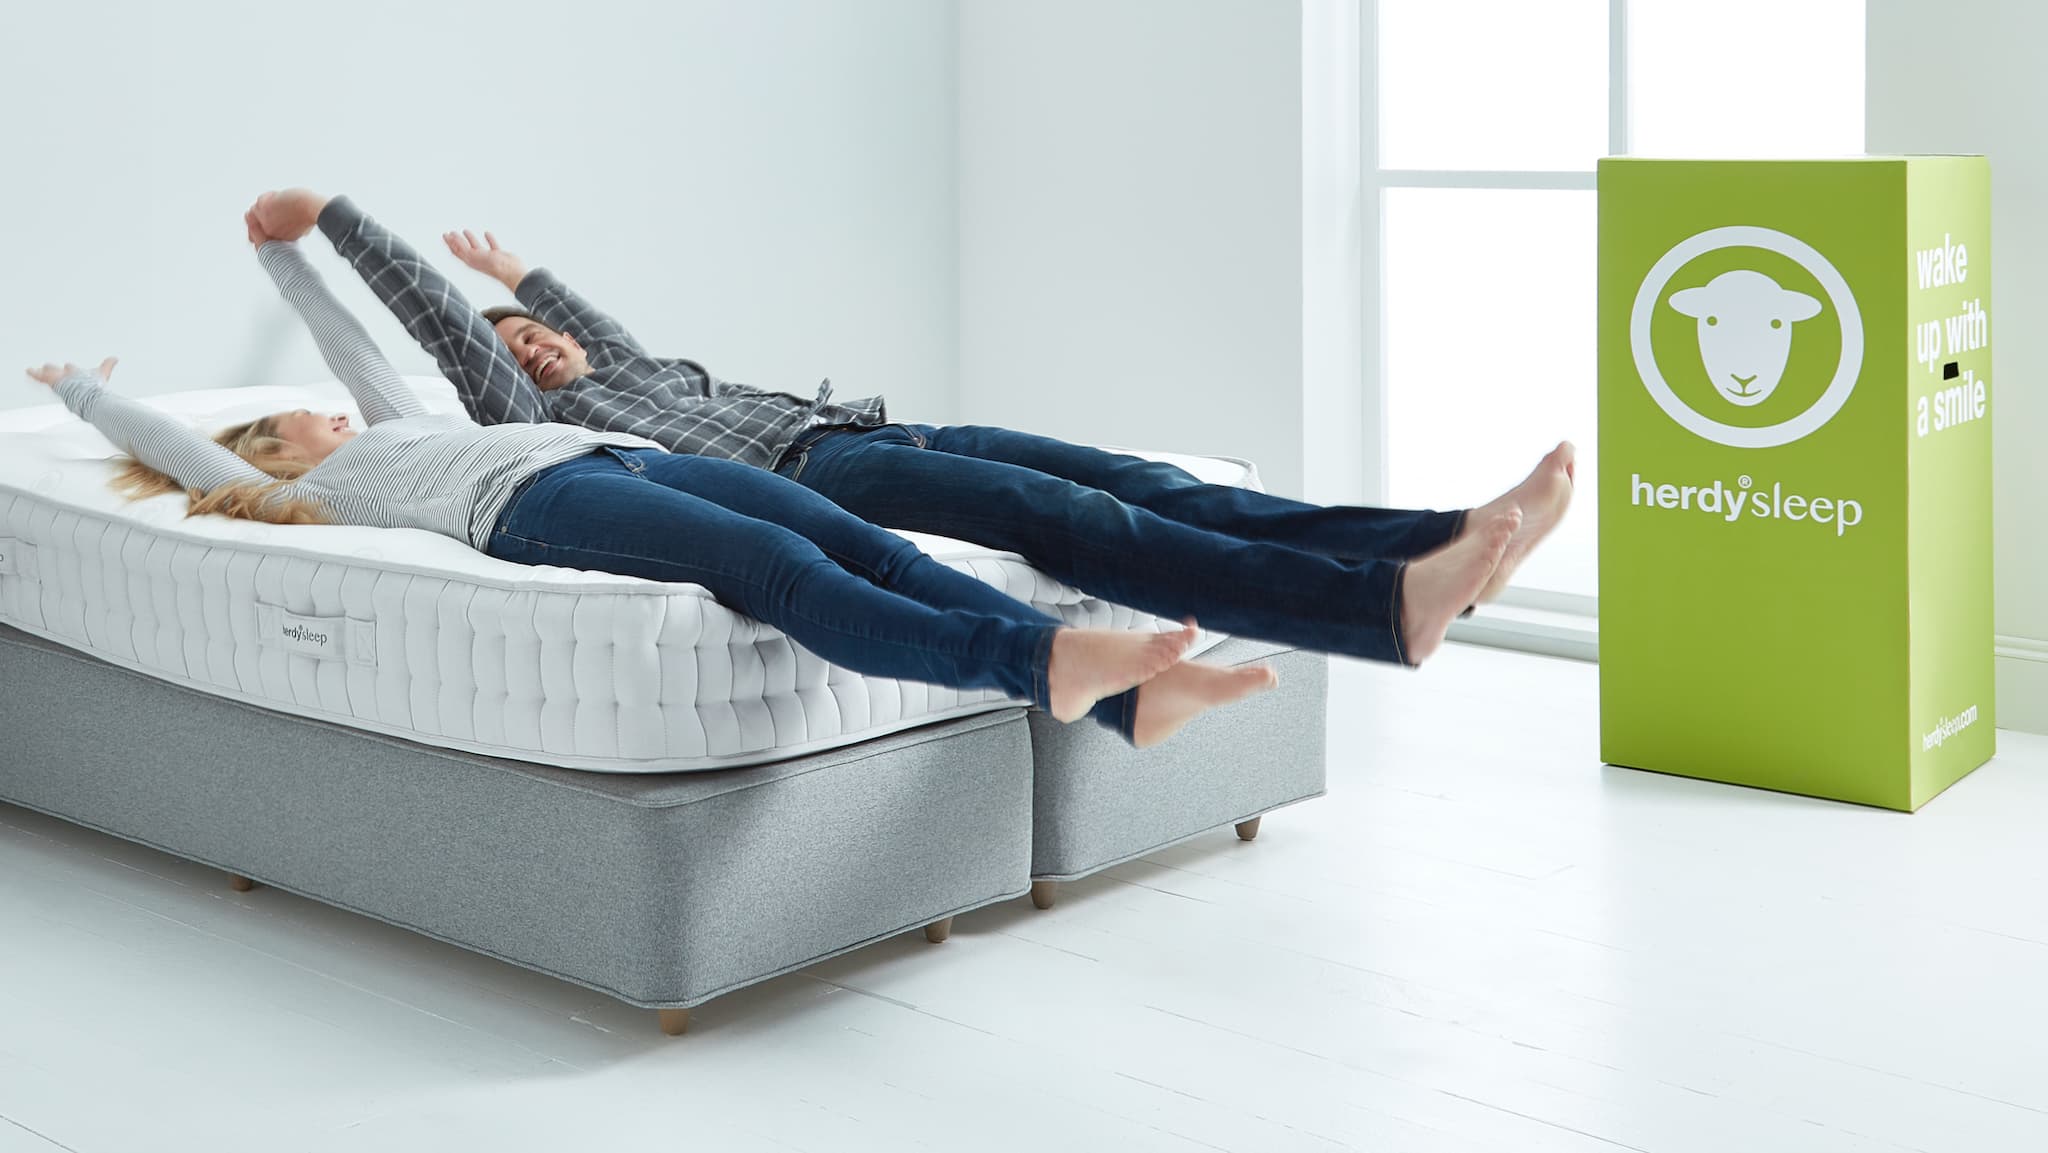 herdy sleep mattress review